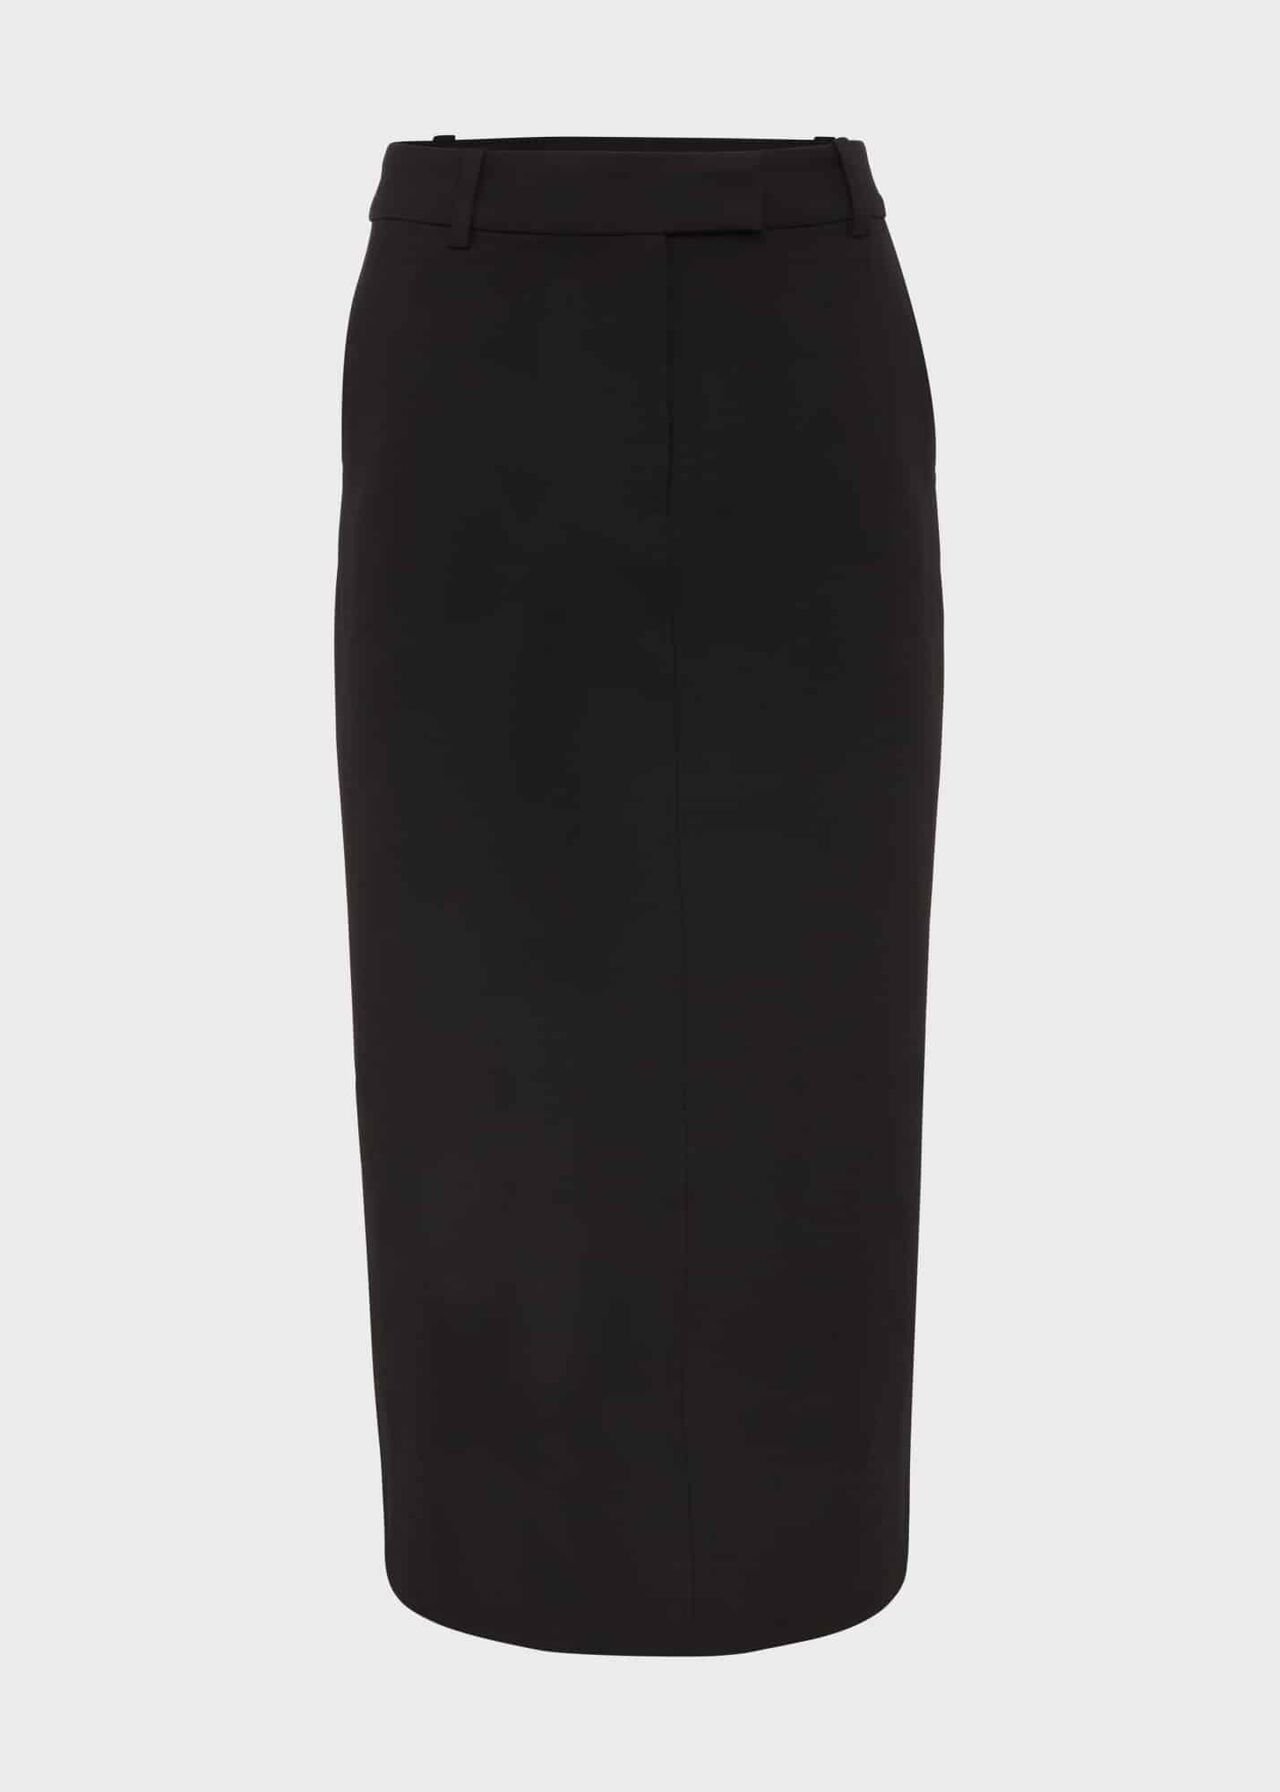 Sylvia Pencil Skirt, Black, hi-res